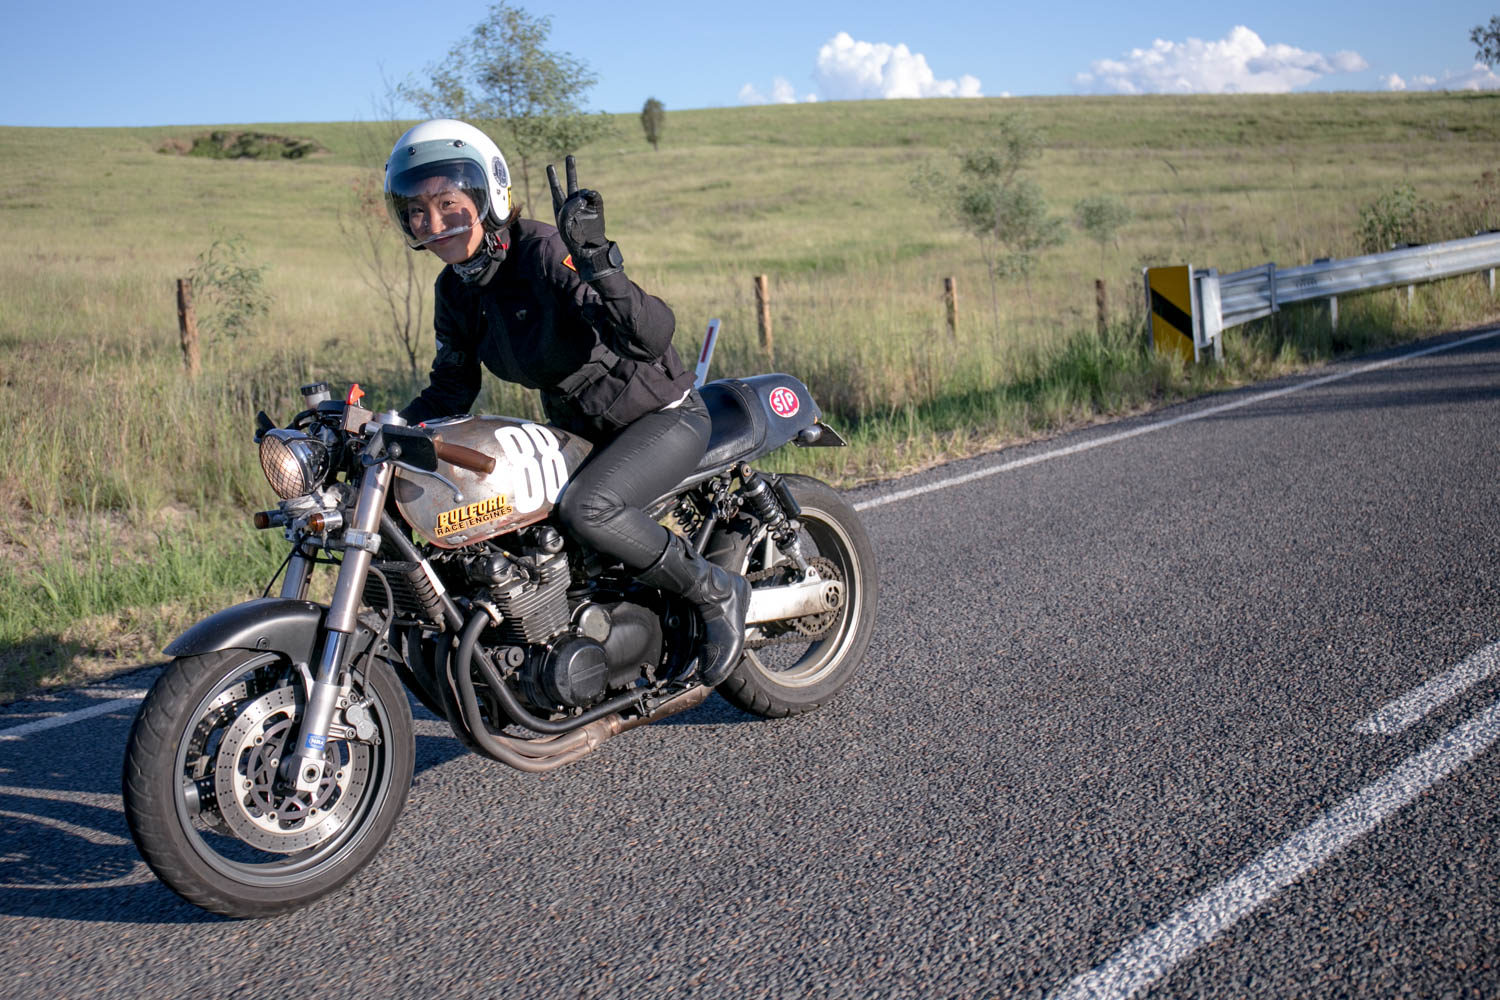 in_venus_veritas_G&Z_motorcycle_rider-63.jpg